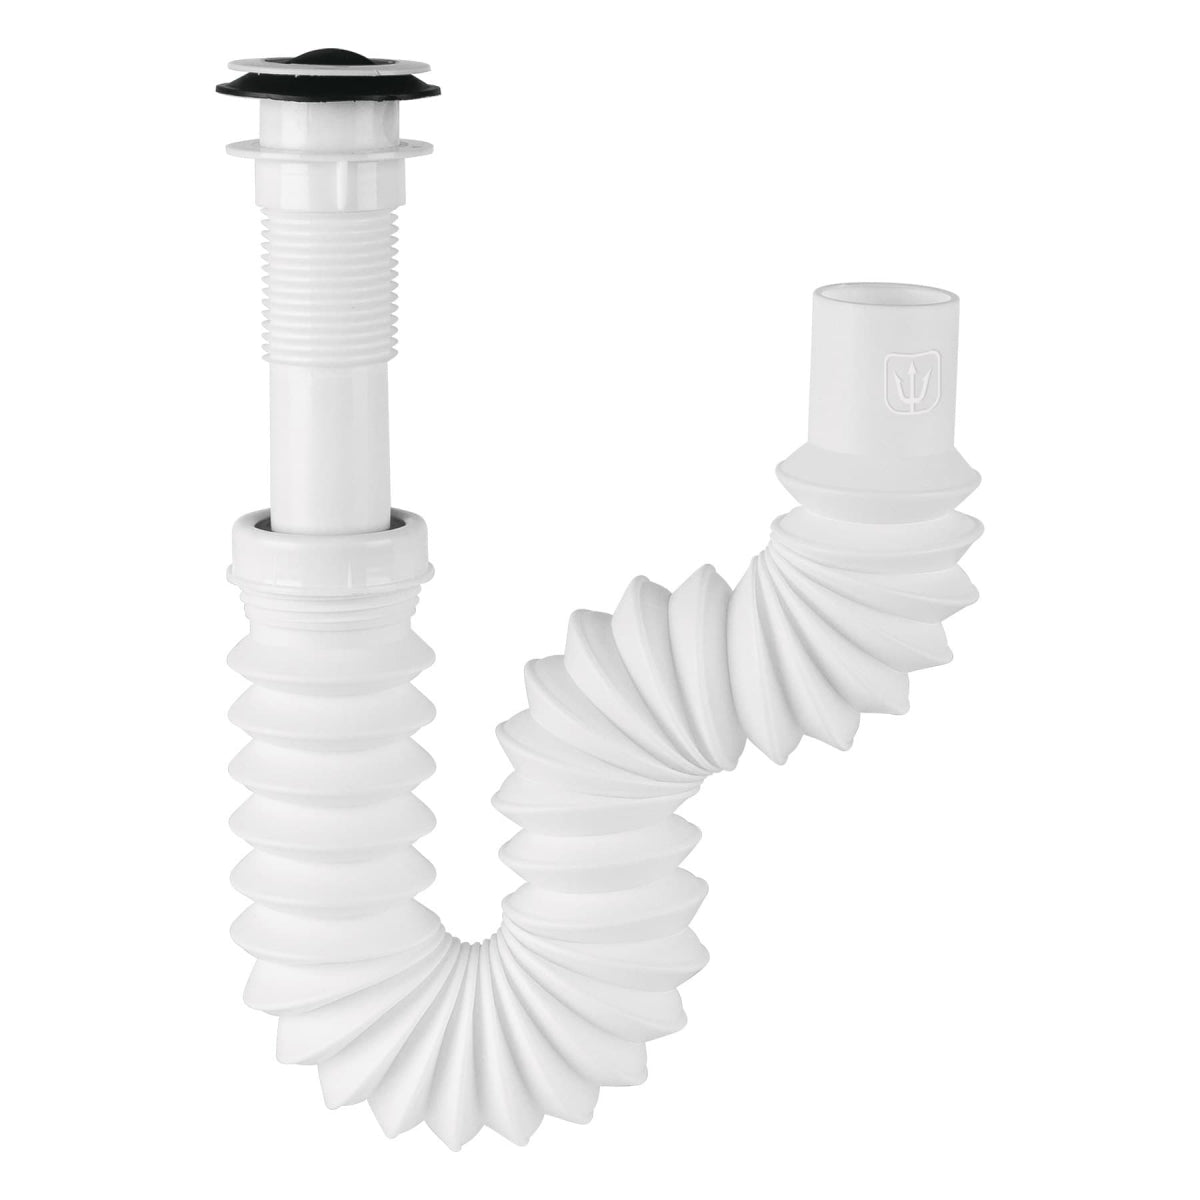 Céspol flexible PVC p/lavabo con contracanasta plástica 1 1/4" SKU:'49365